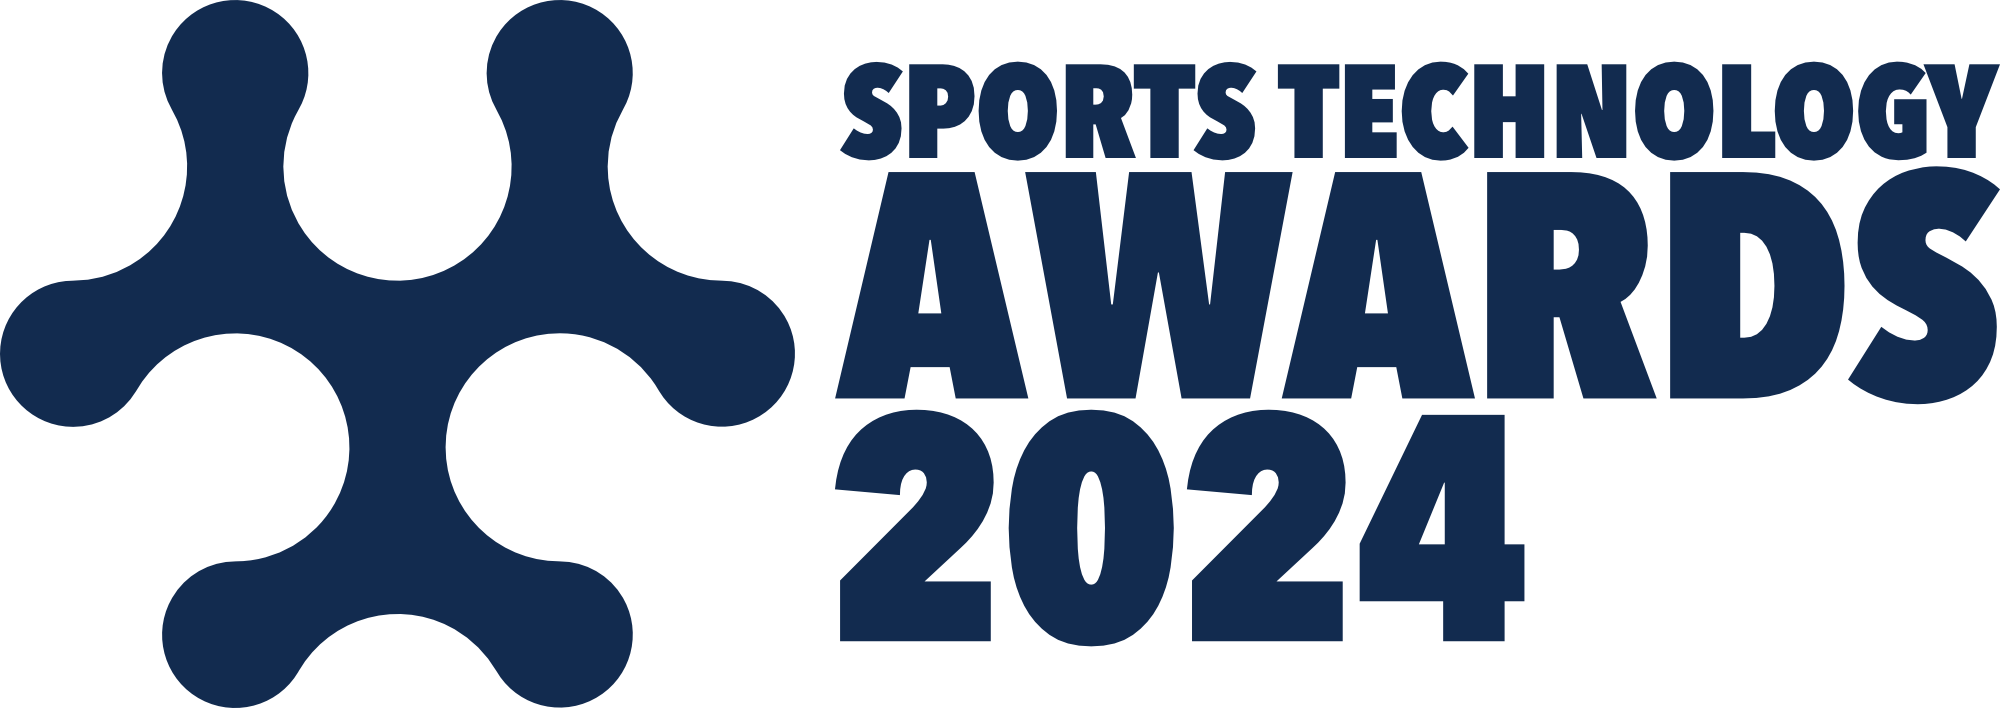 Sports Technology Awards 2024